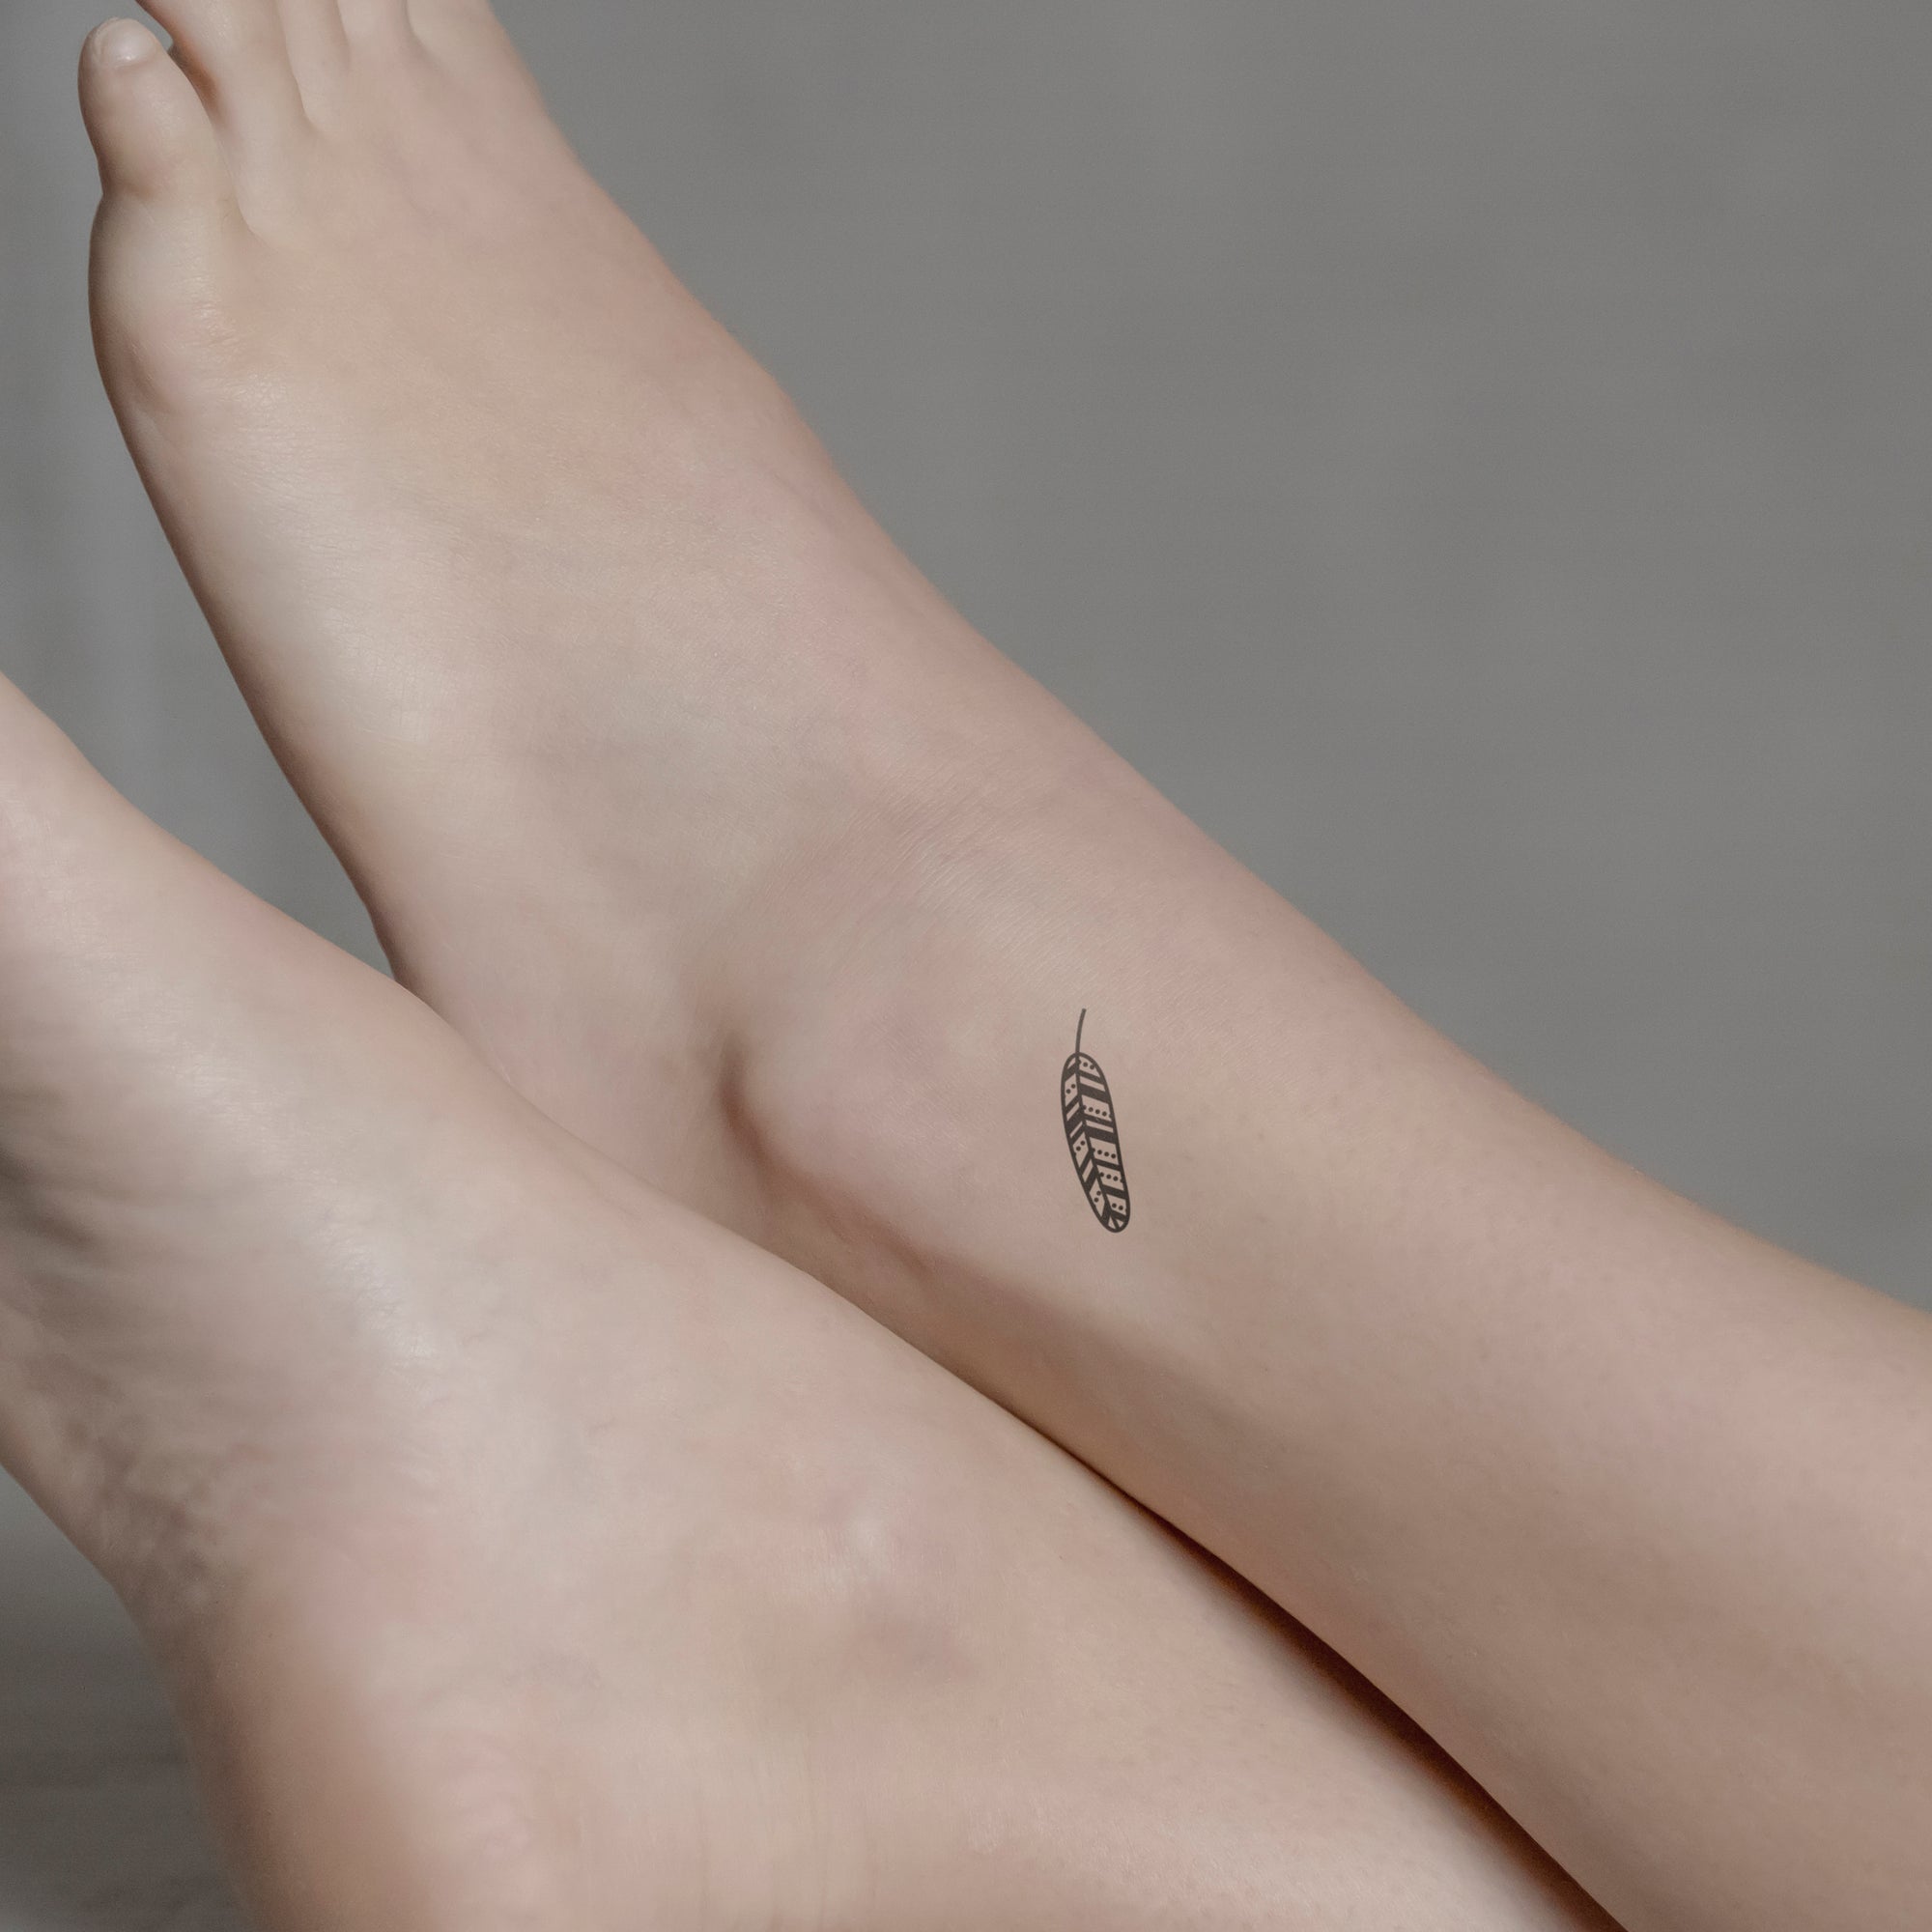 Feder Tattoo von minink, der Marke für temporäre Tattoos.